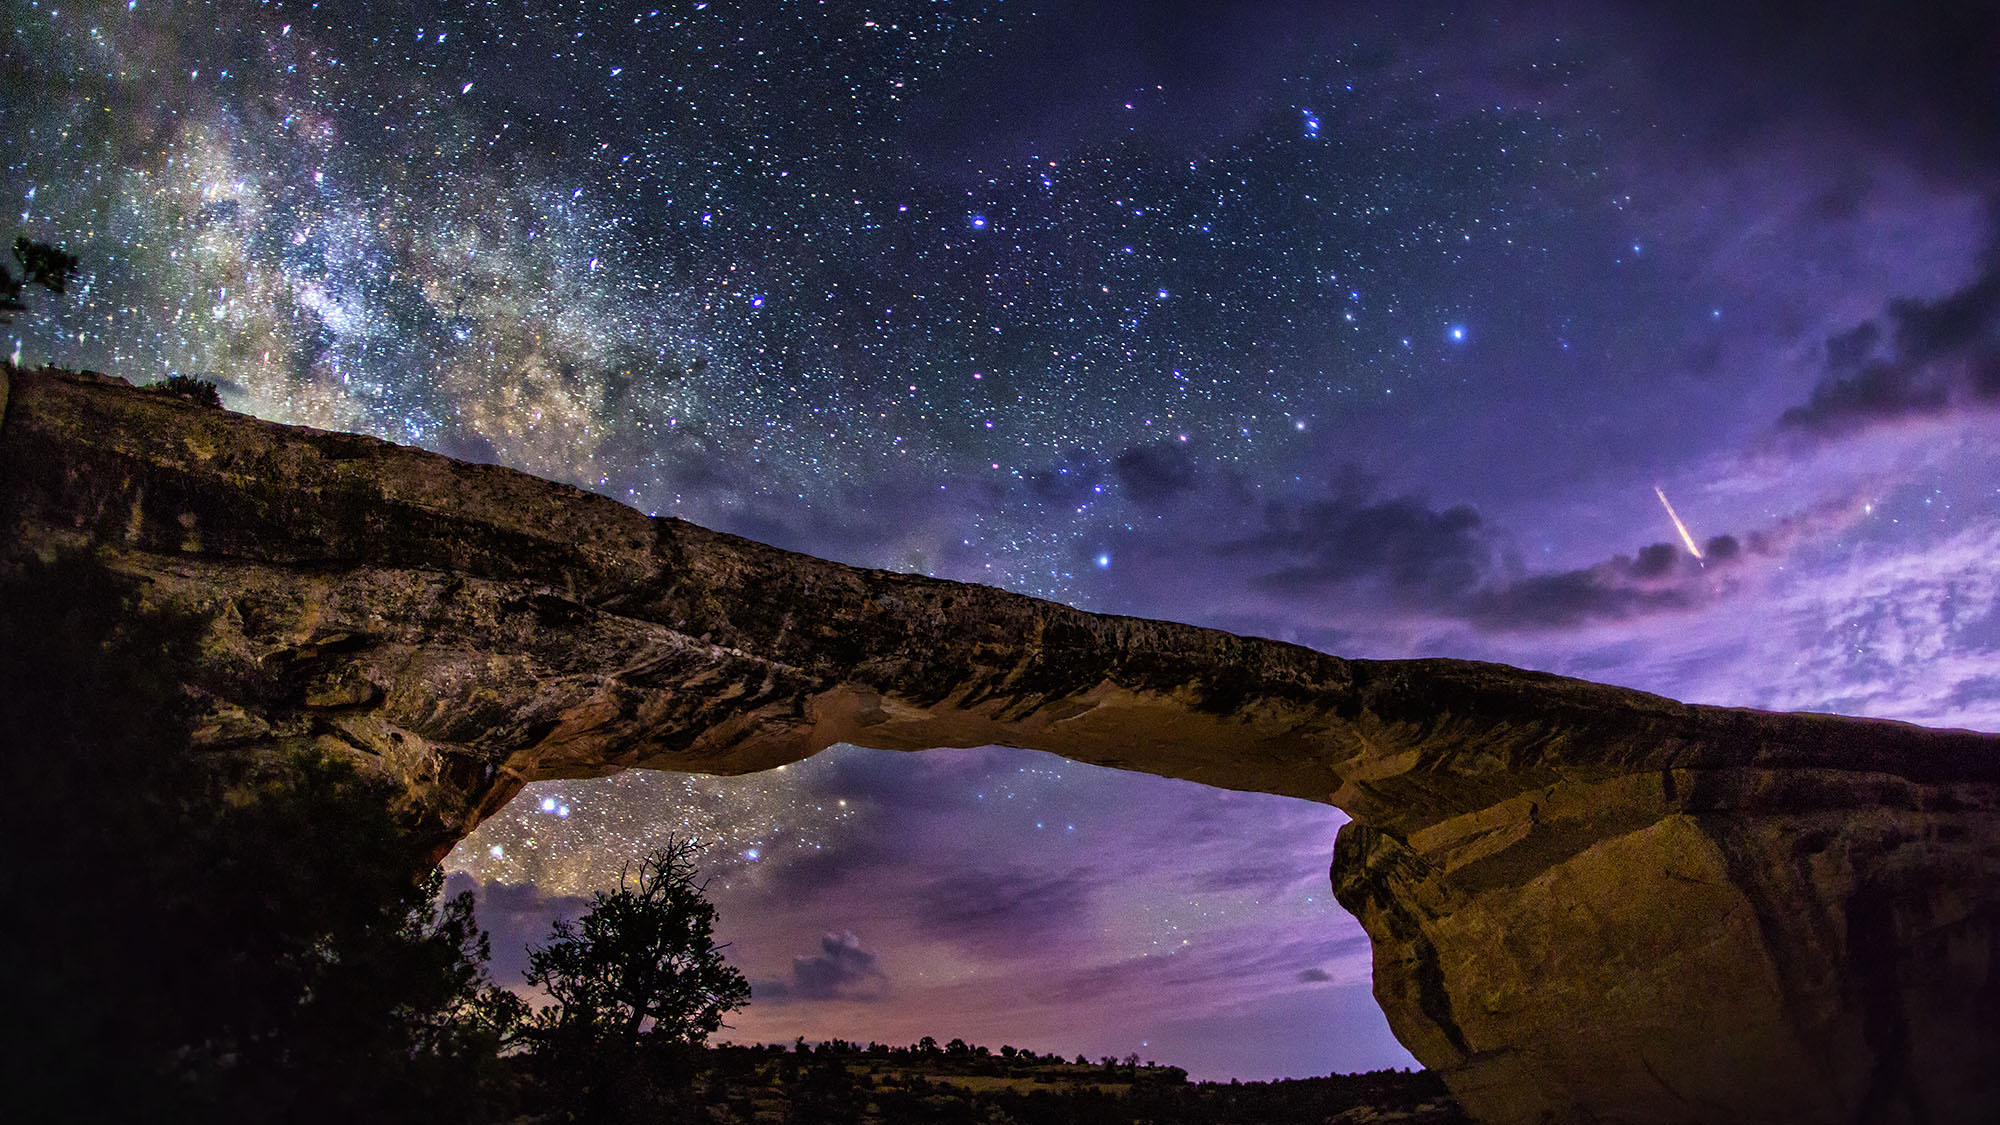 アメリカで最も暗い夜空 オワチョモブリッジで見る星空の絶景